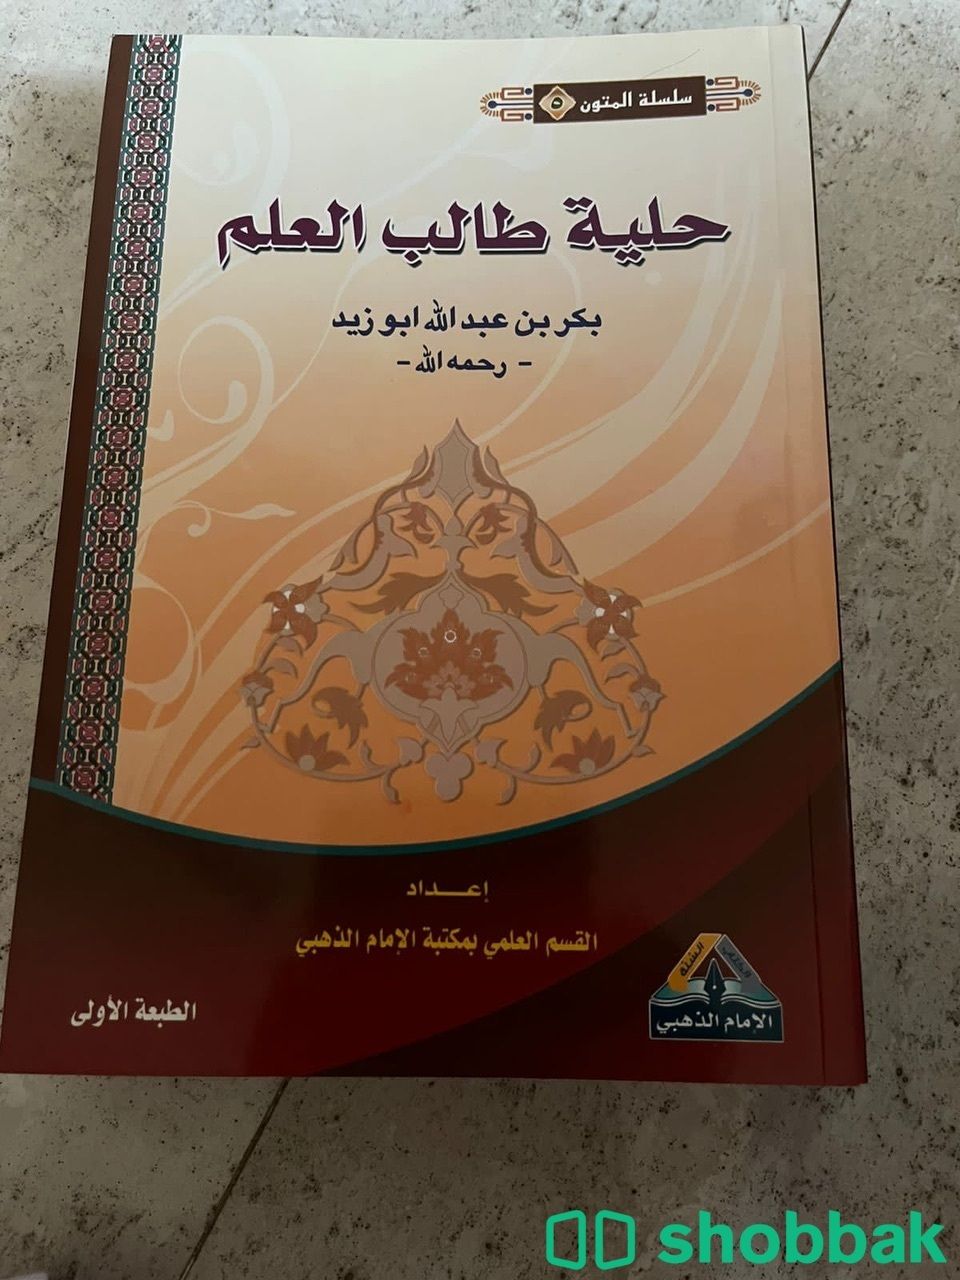 كتب دينية و تطويرية متنوعة Shobbak Saudi Arabia